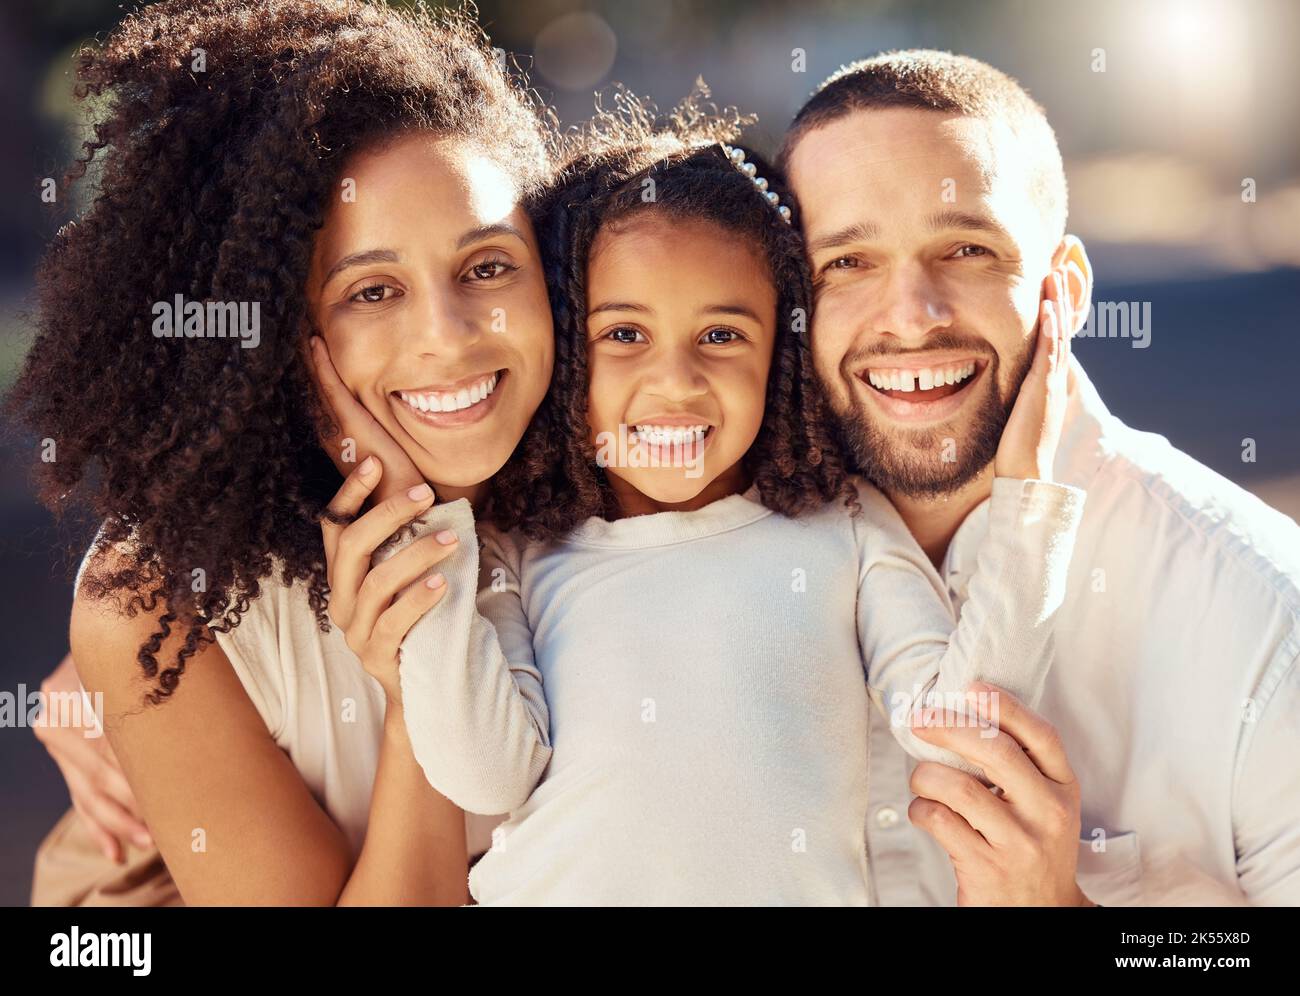 Familie, Lächeln und glückliches Kind mit Mama und Papa, die sich verbinden, glücklich sind und Liebe zeigen, während sie im Sommer gemeinsam draußen sind. Porträt und Gesicht eines Mannes, einer Frau Stockfoto